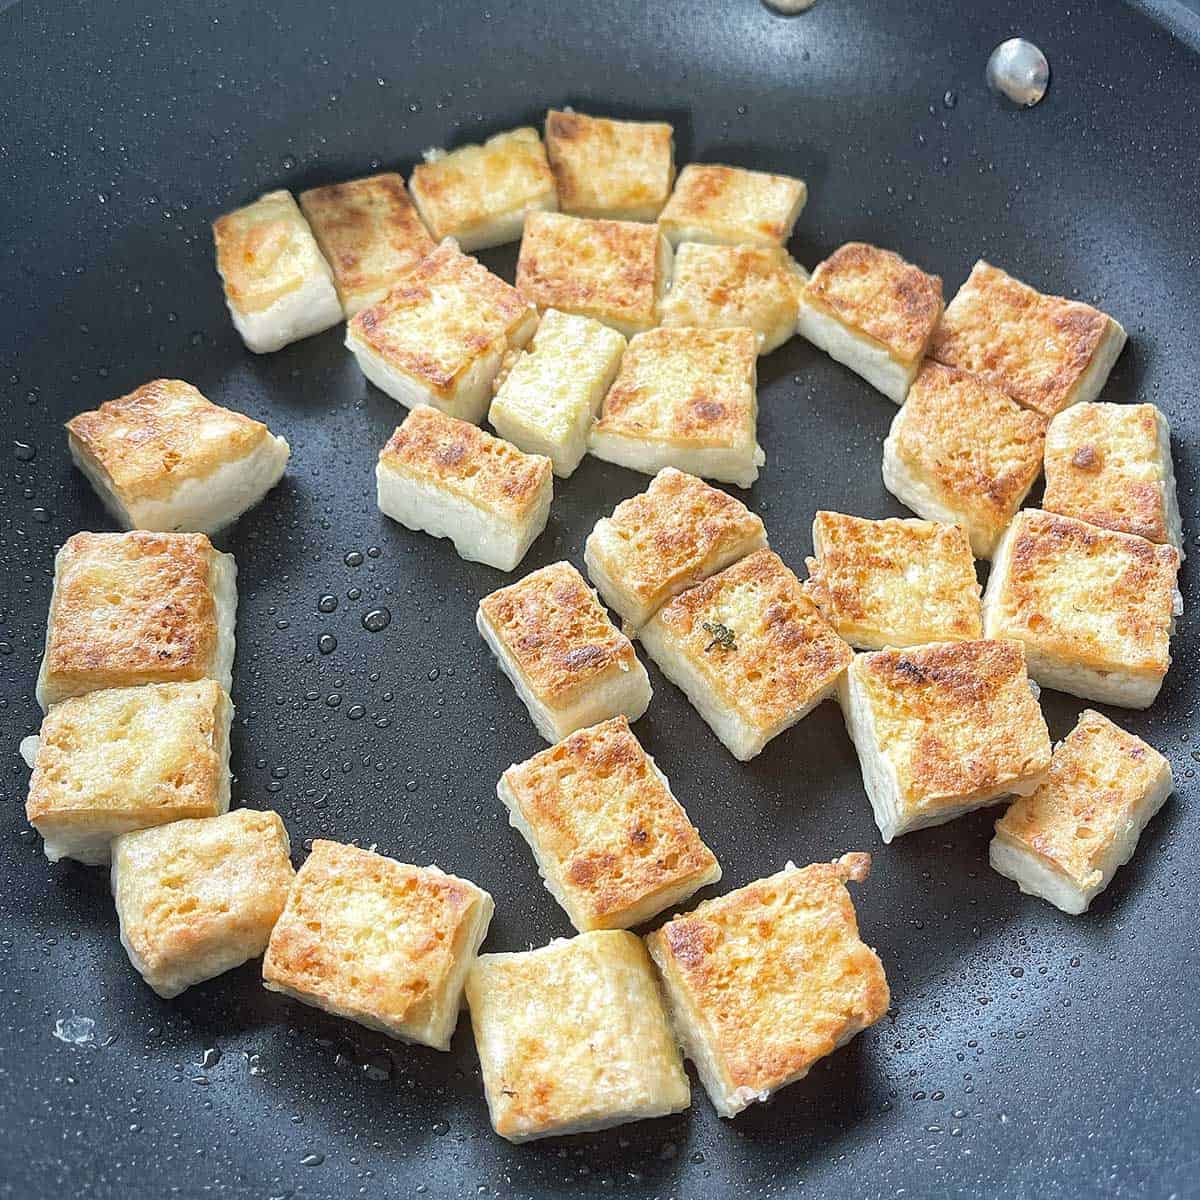 Tofu pan frying in a frying pan.